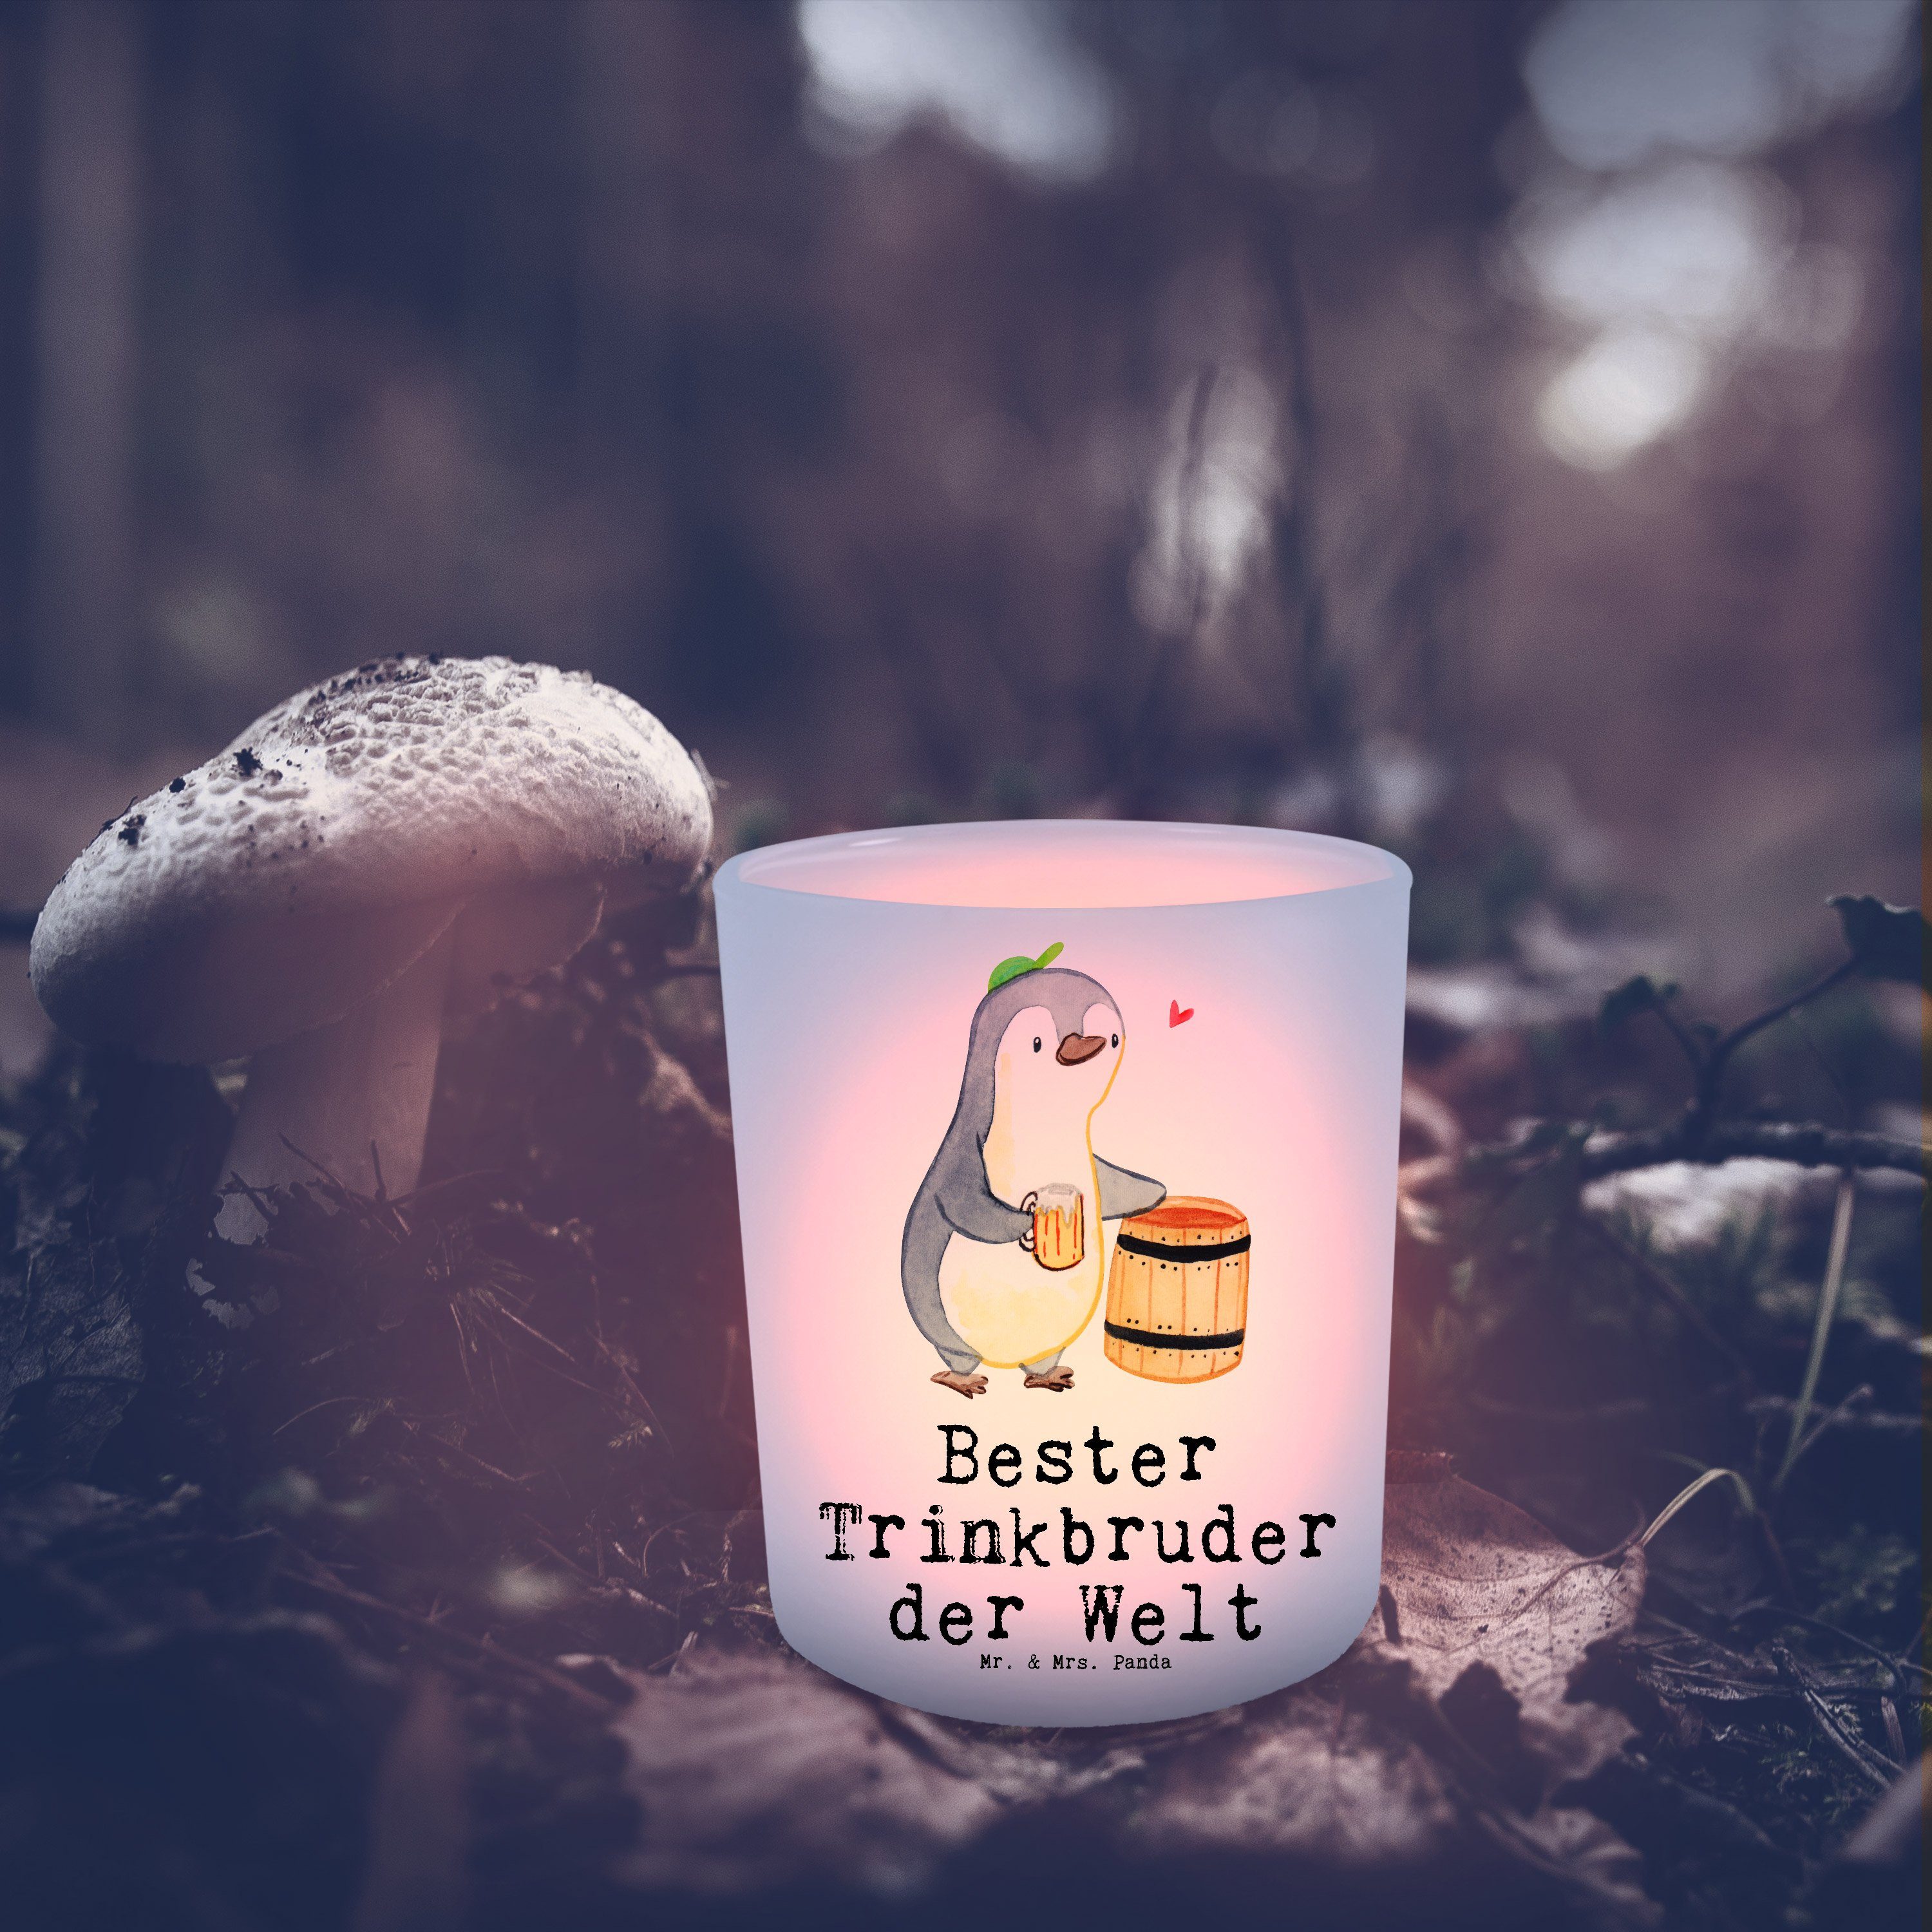 Windlicht Pinguin Trinkbruder - Mr. Geschenk, Mrs. - der & (1 Teelich St) Transparent Bester Panda Welt